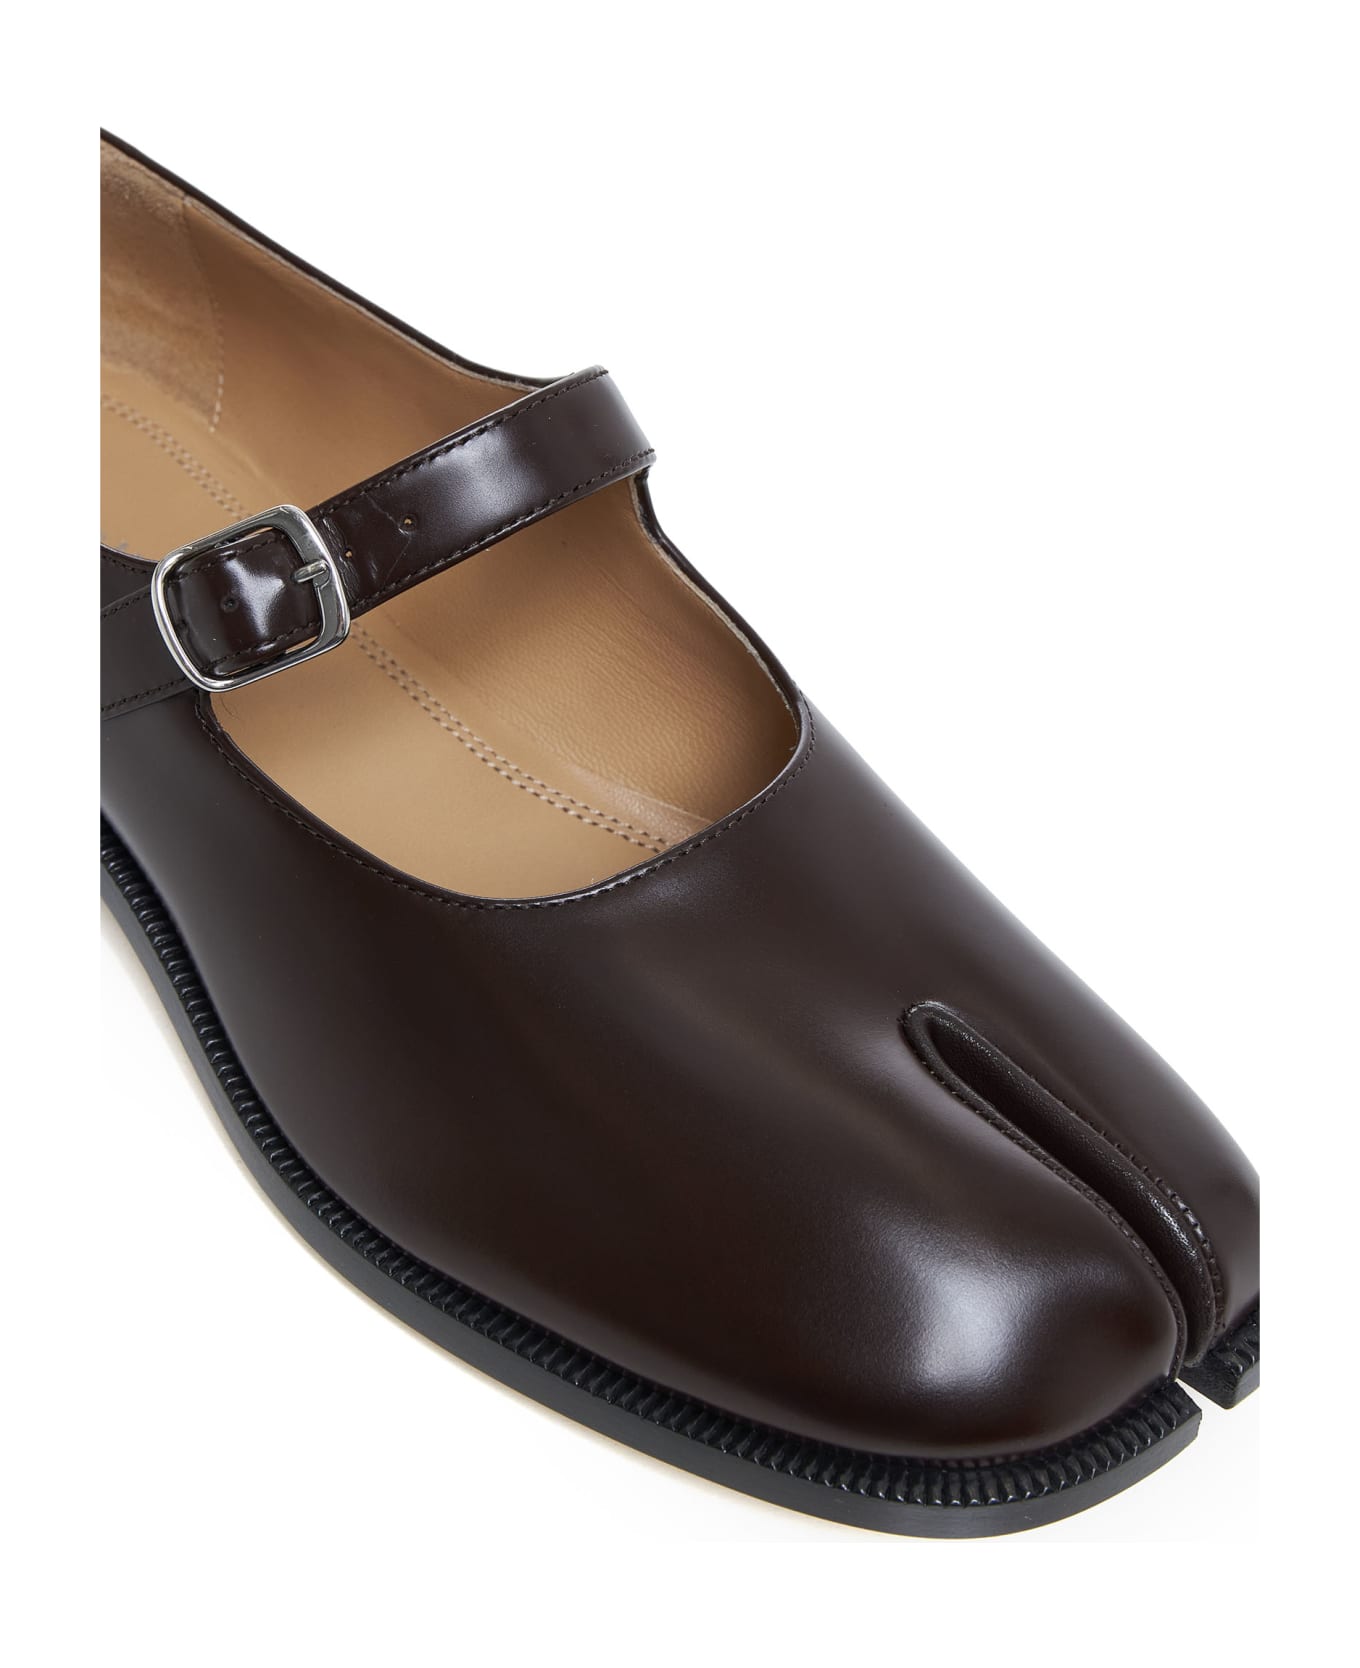 Maison Margiela Flat Shoes - Chic brown